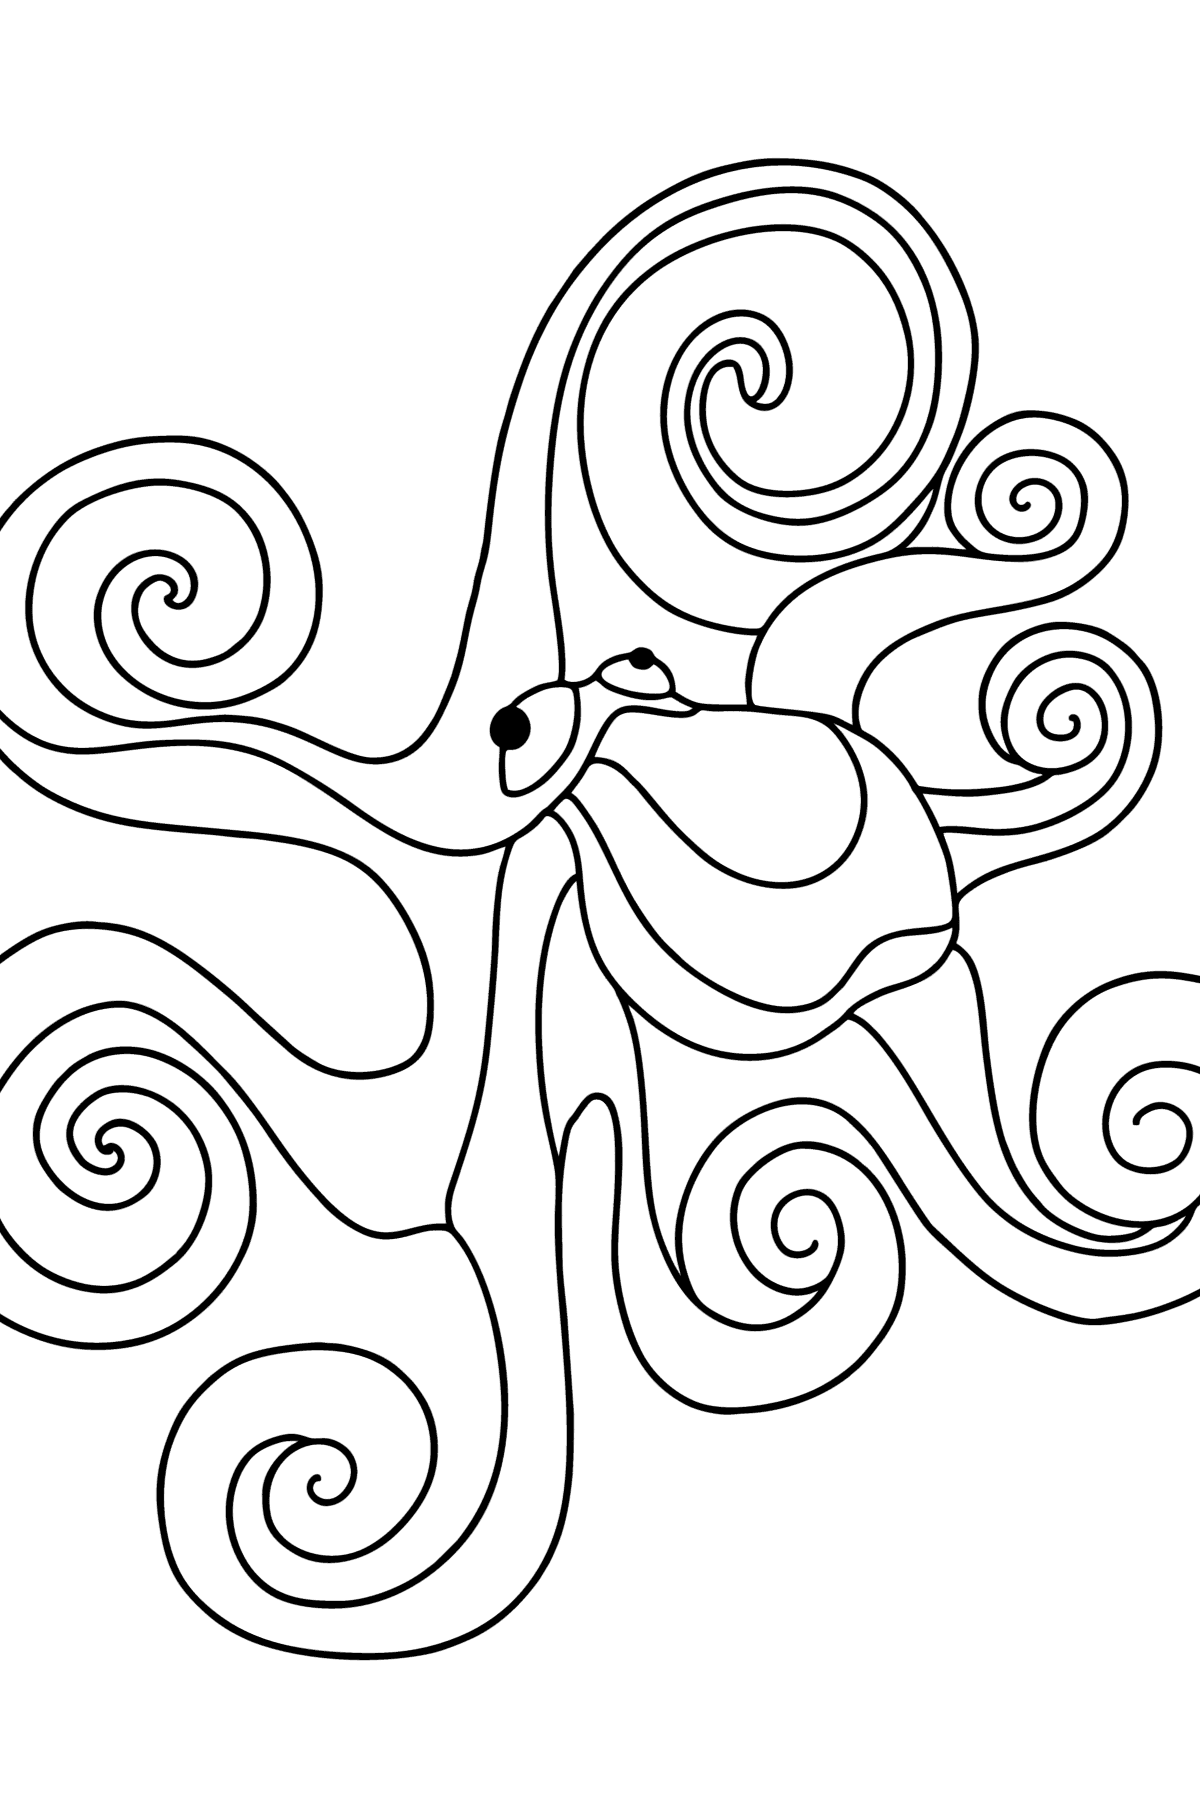 Tegning til fargelegging vanlig blekksprut - Tegninger til fargelegging for barn